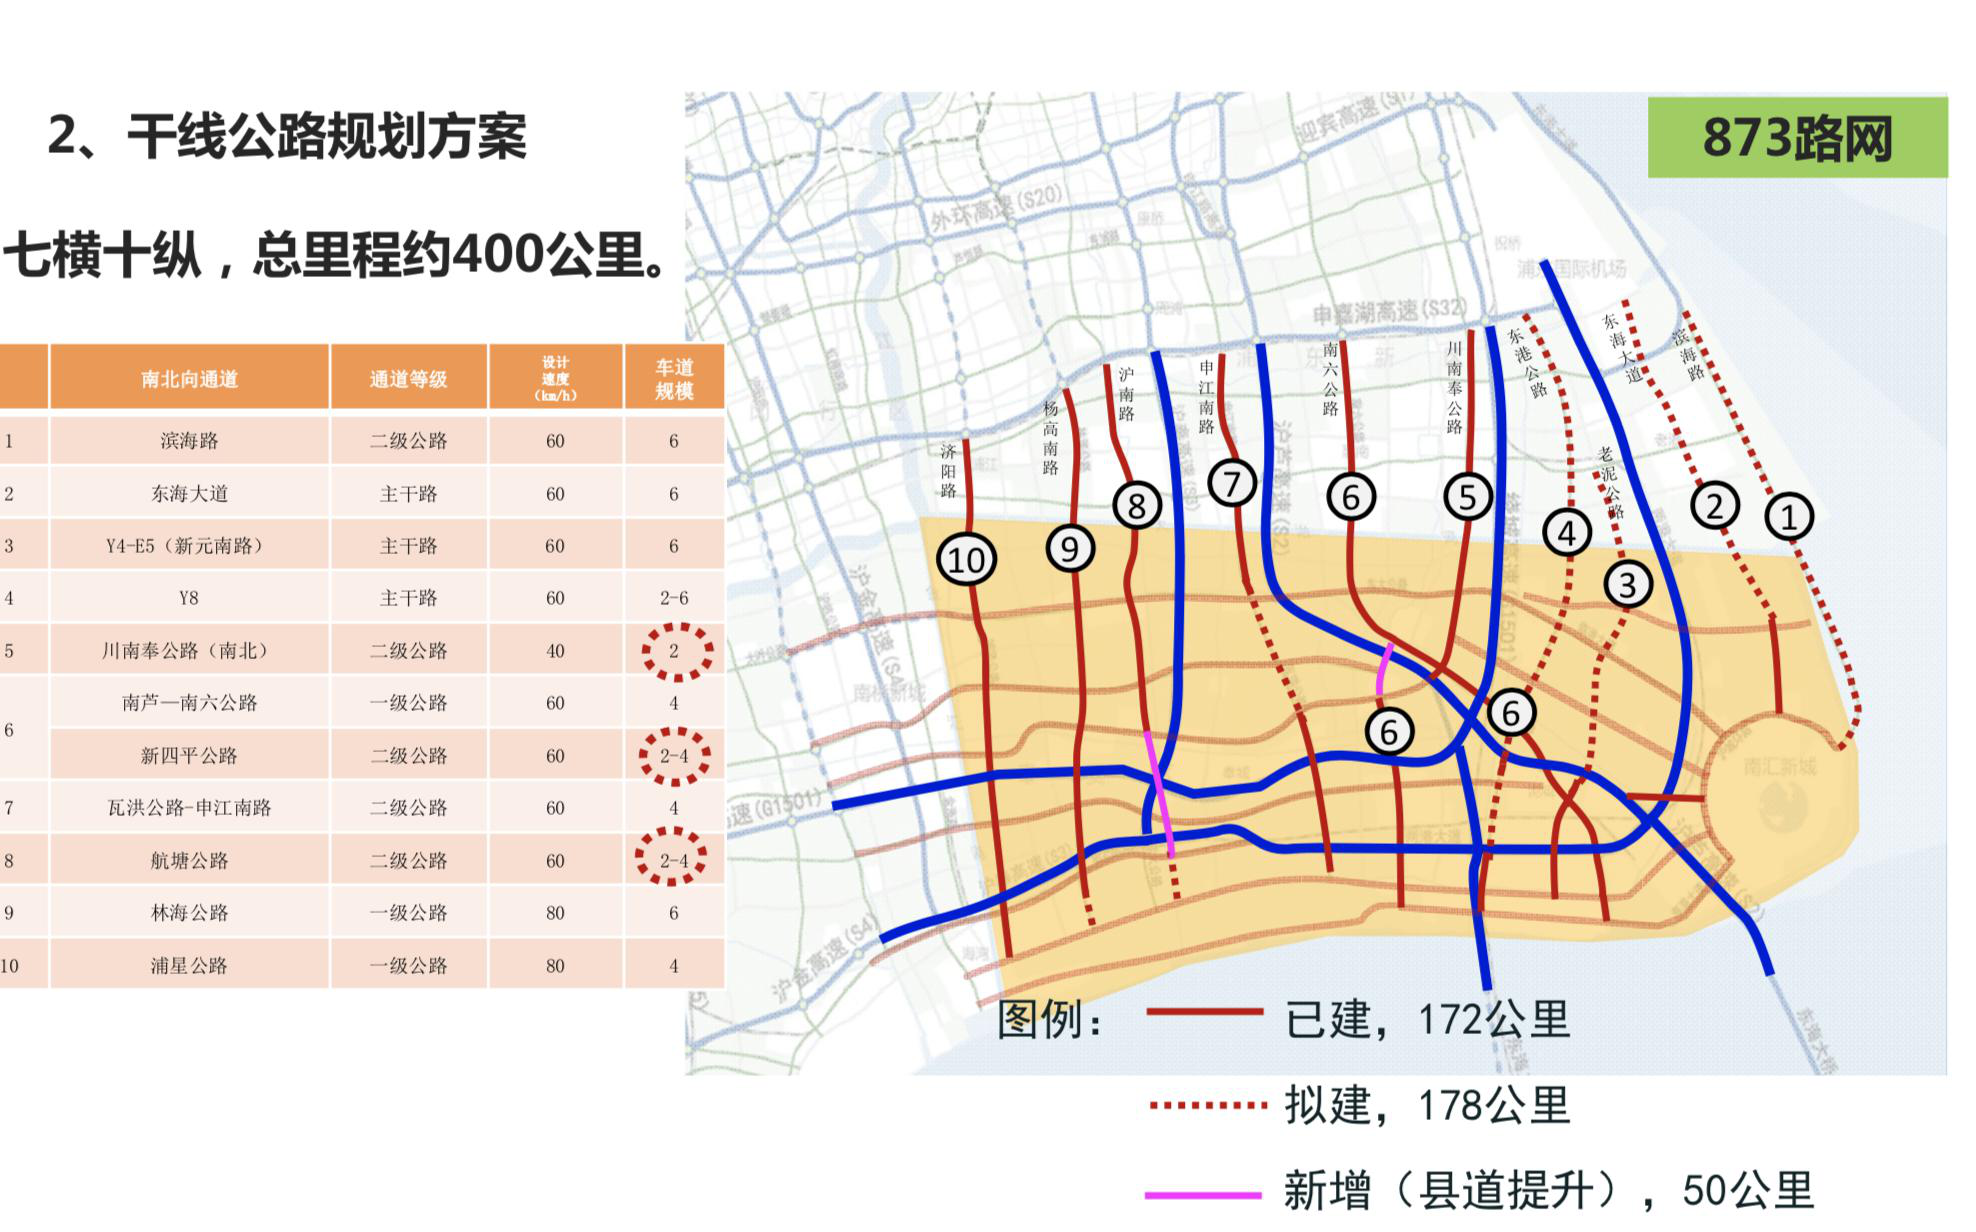 临港新片区交通三年计划建设两港快线沪通铁路二期